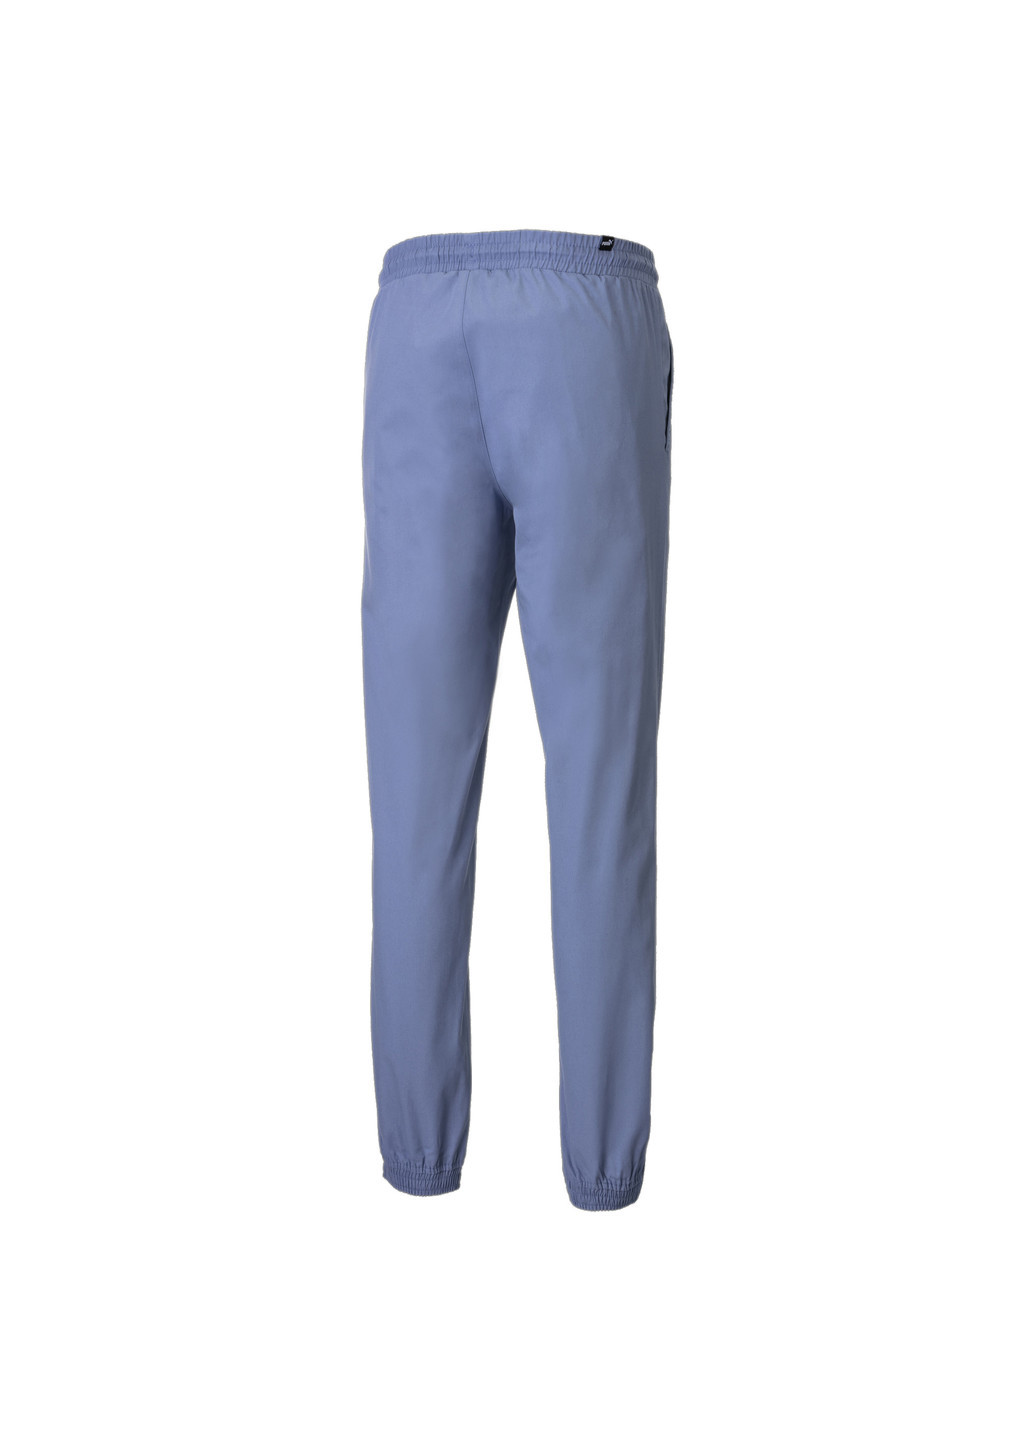 Штани Utility Woven Men's Pants Puma однотонні сині спортивні